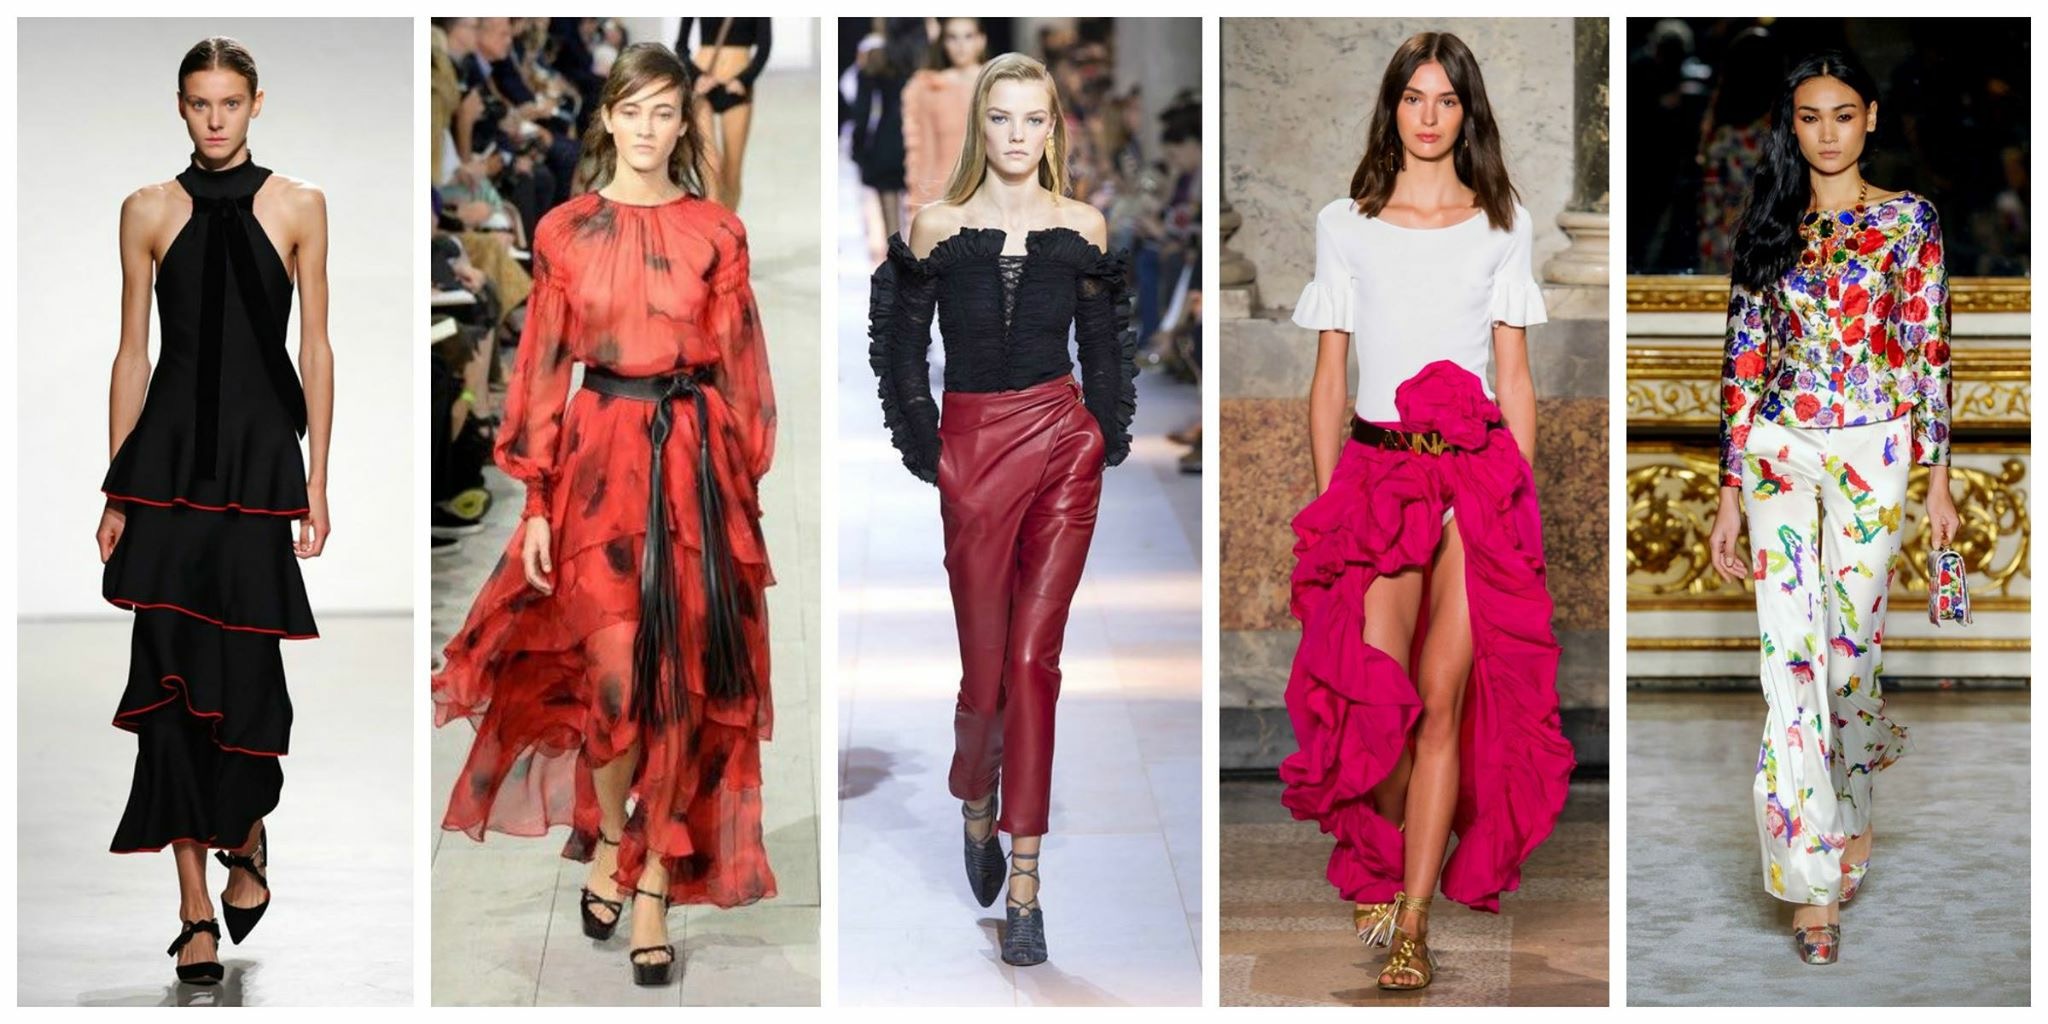    Από αριστερά:Balmain, Dolce&Gabbana, Gucci, Proenza Schouler, Proenza Schouler.  